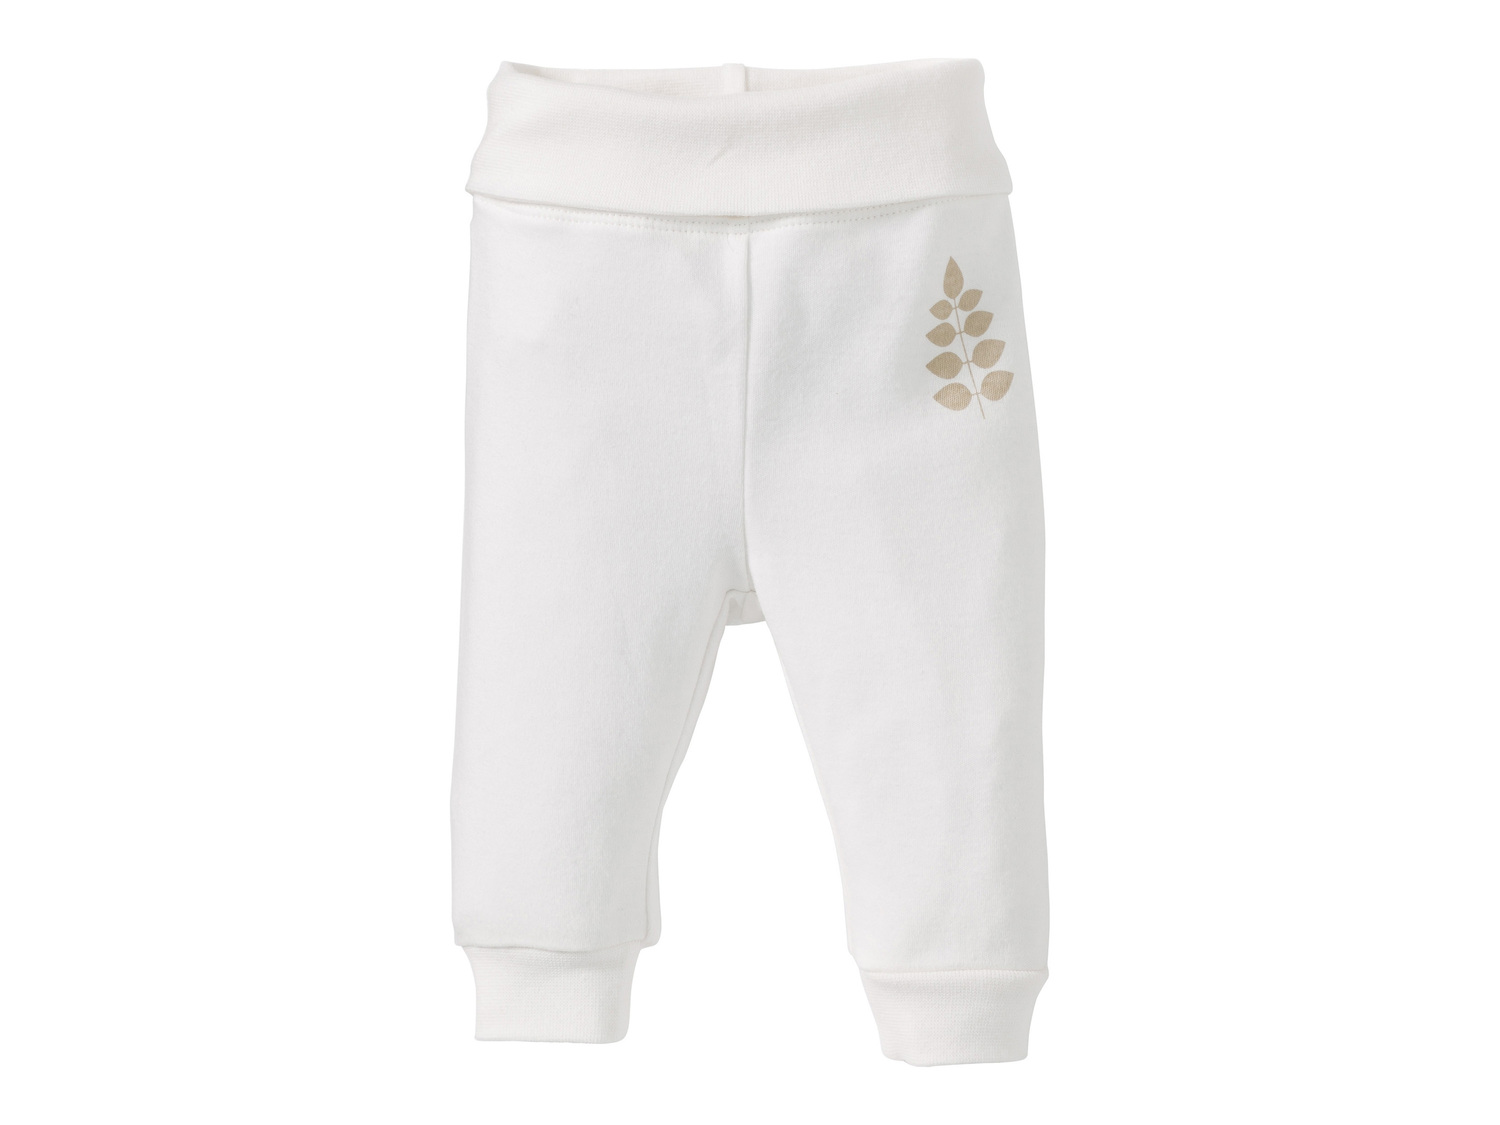 Pantaloni sportivi da neonata, 2 pezzi Lupilu, prezzo 3.99 &#8364; 
- Comodo ...